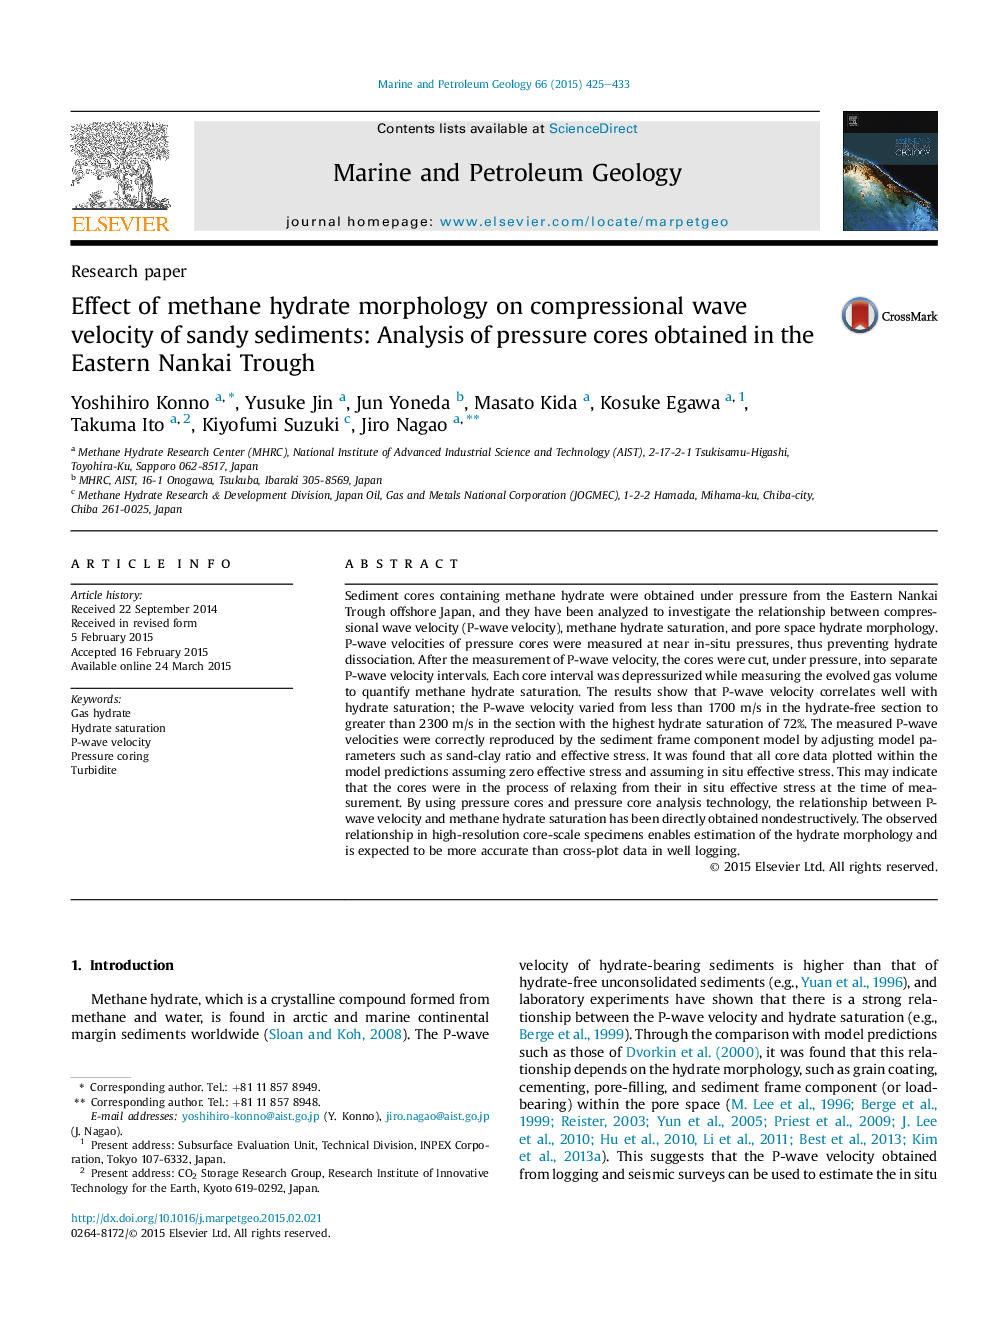 اثر مورفولوژی هیدرات متان در سرعت موج فشاری در رسوبات ماسه ای: تجزیه و تحلیل هسته های فشار یافته در شرق نانکی 